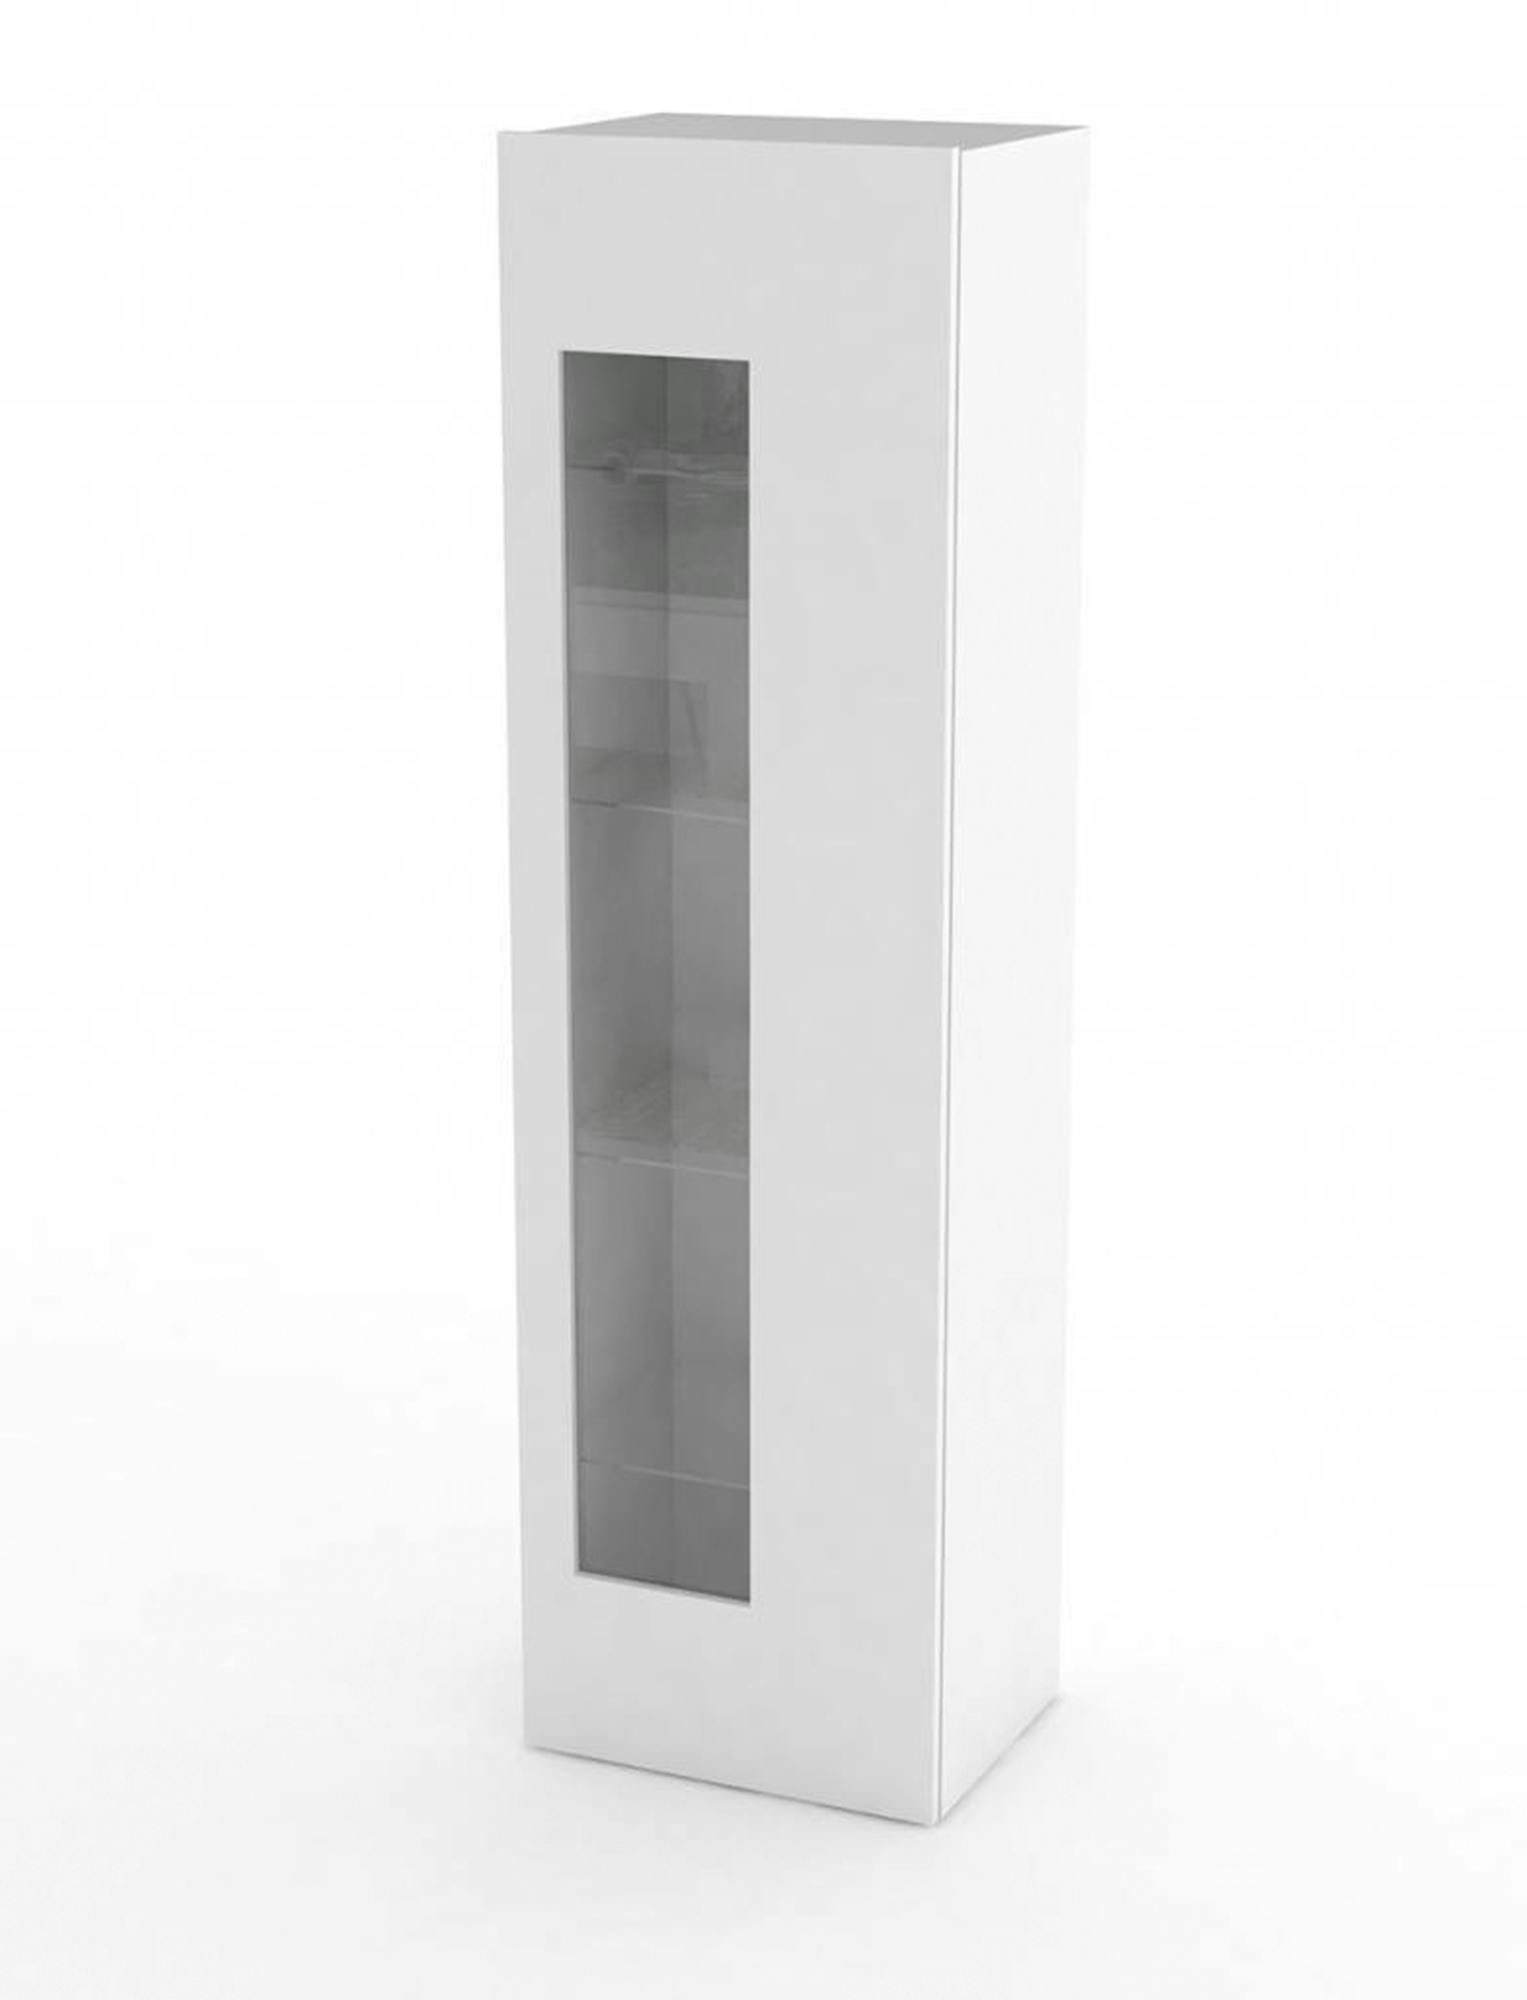 Dmora Vetrina Mimmo, Credenza con anta a vetro, Mobile da soggiorno  multiuso, 100% Made in Italy, cm 45x34h162, Bianco lucido